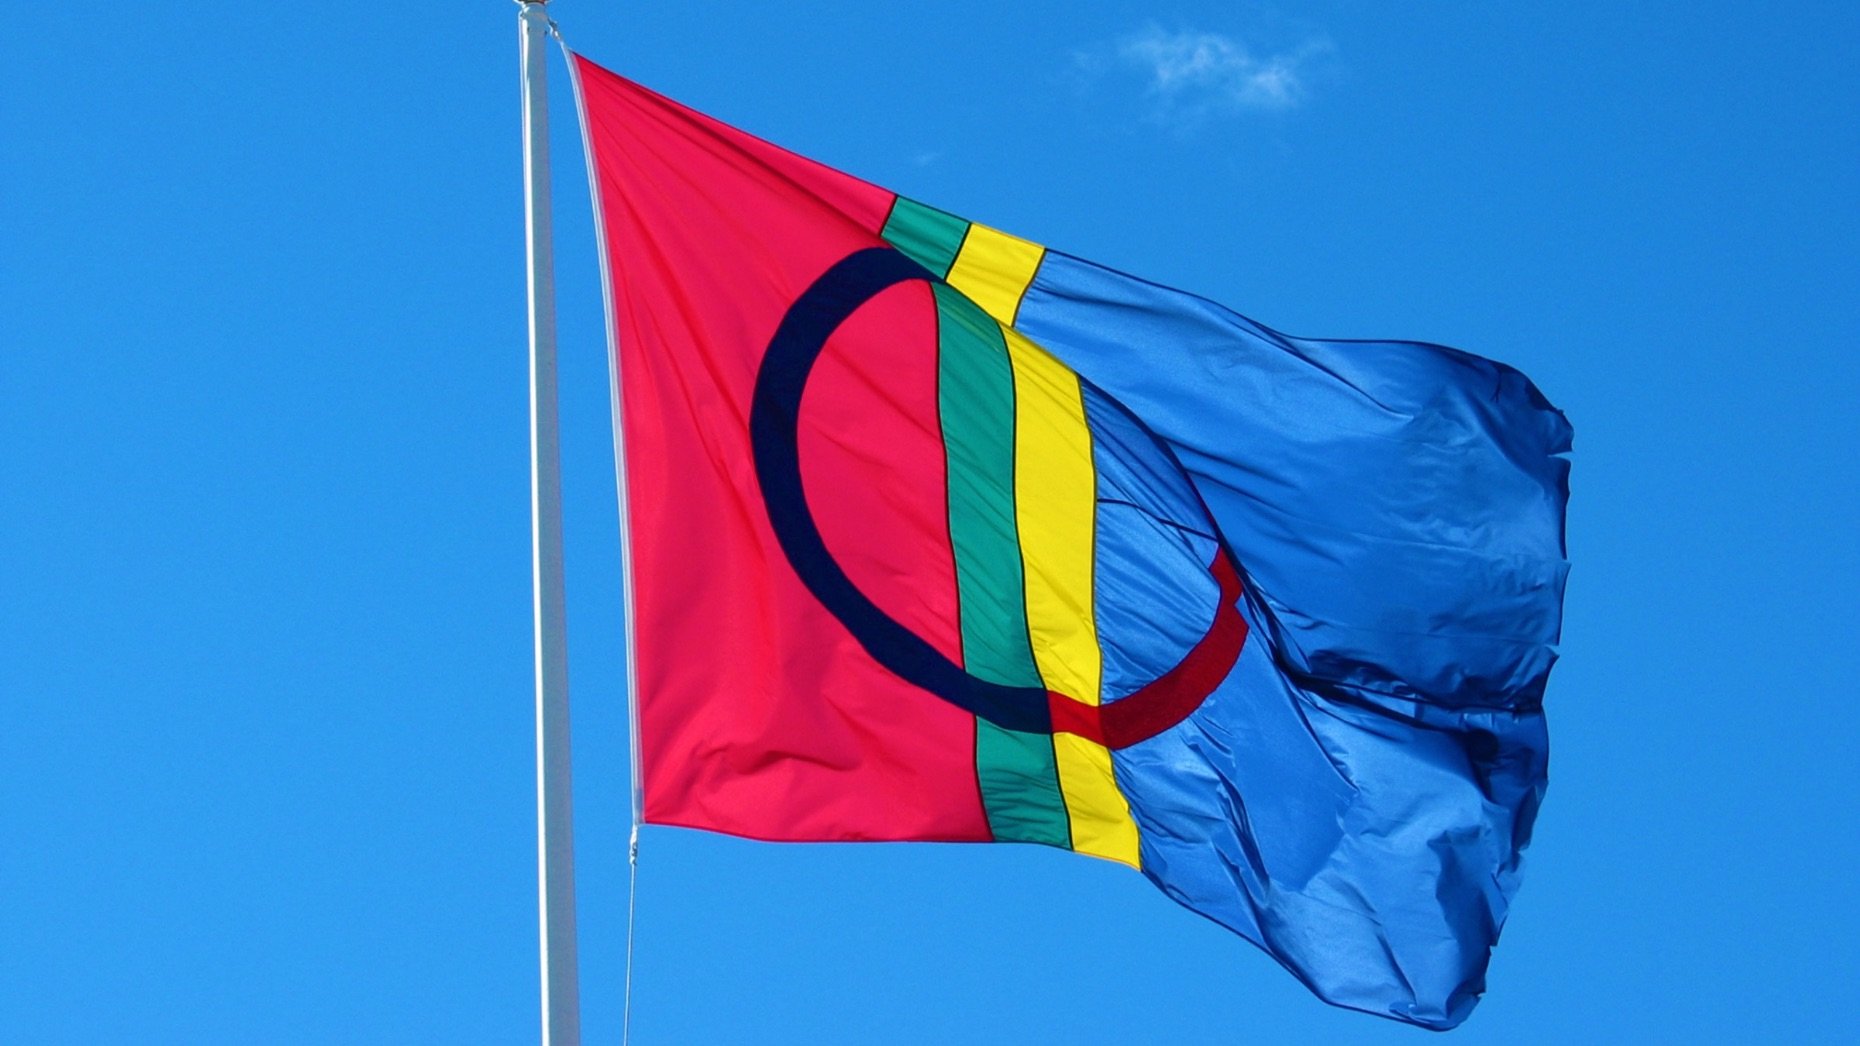 The Sami flag against a blue sky.